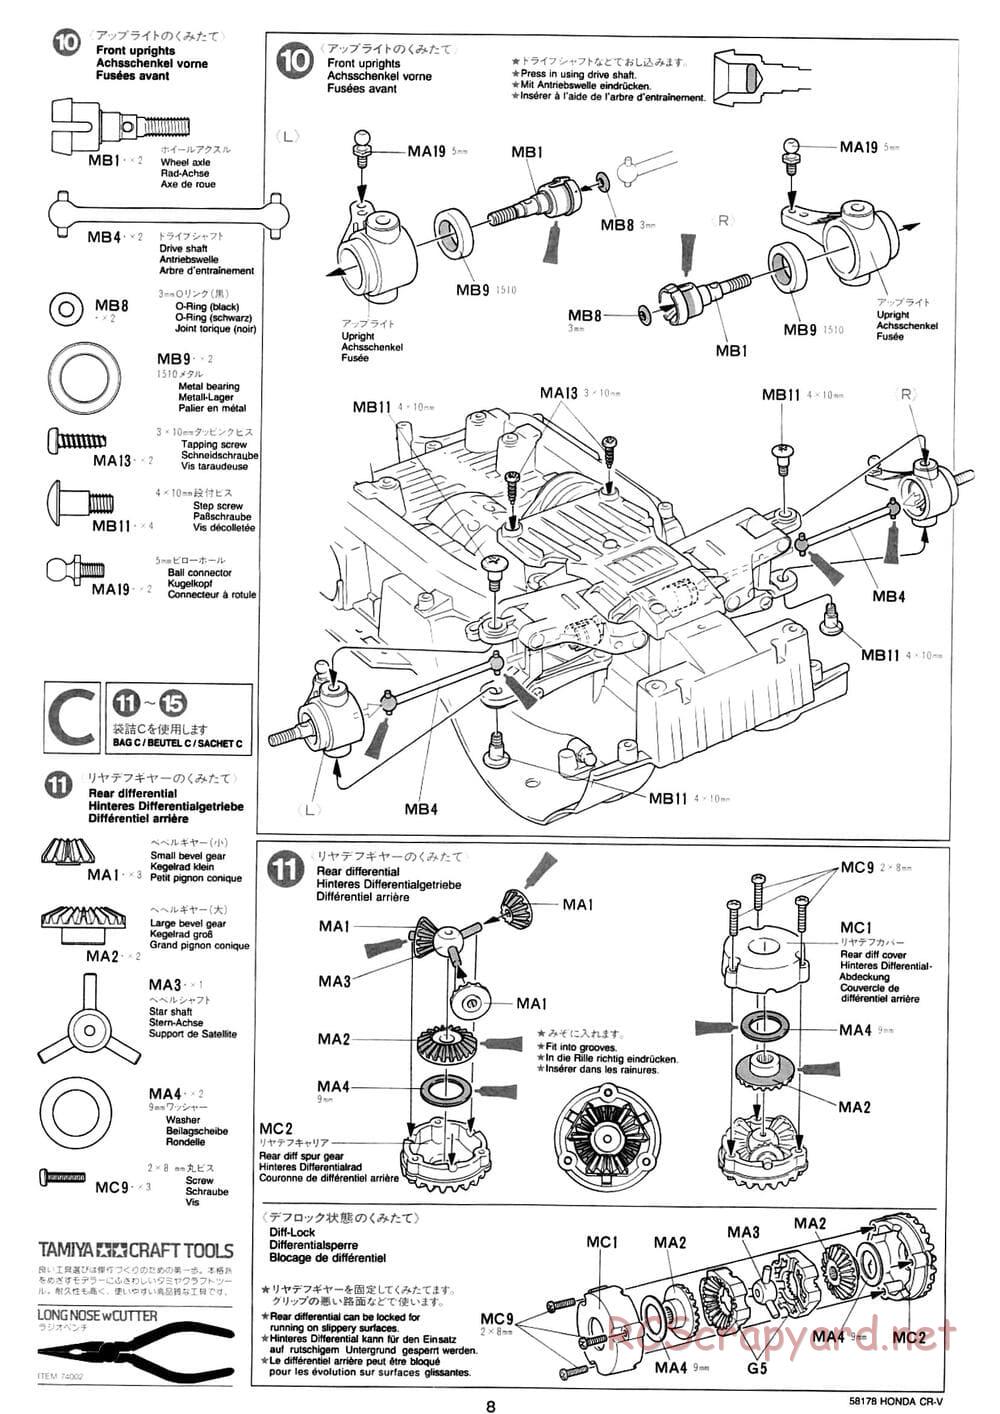 Tamiya - Honda CR-V - CC-01 Chassis - Manual - Page 8